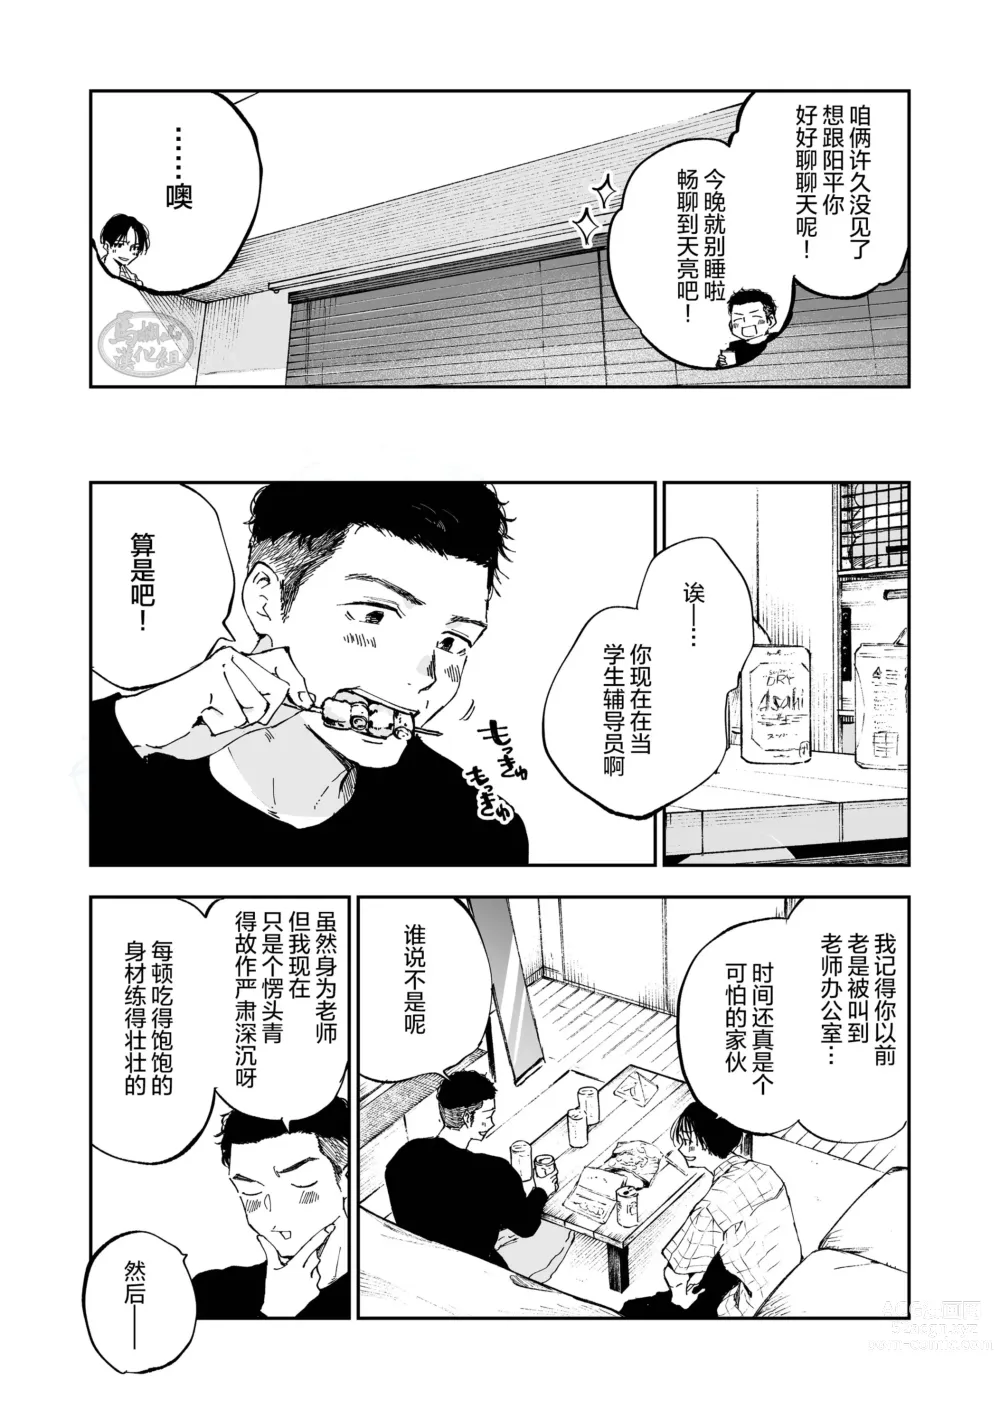 Page 4 of manga キミは ともだち